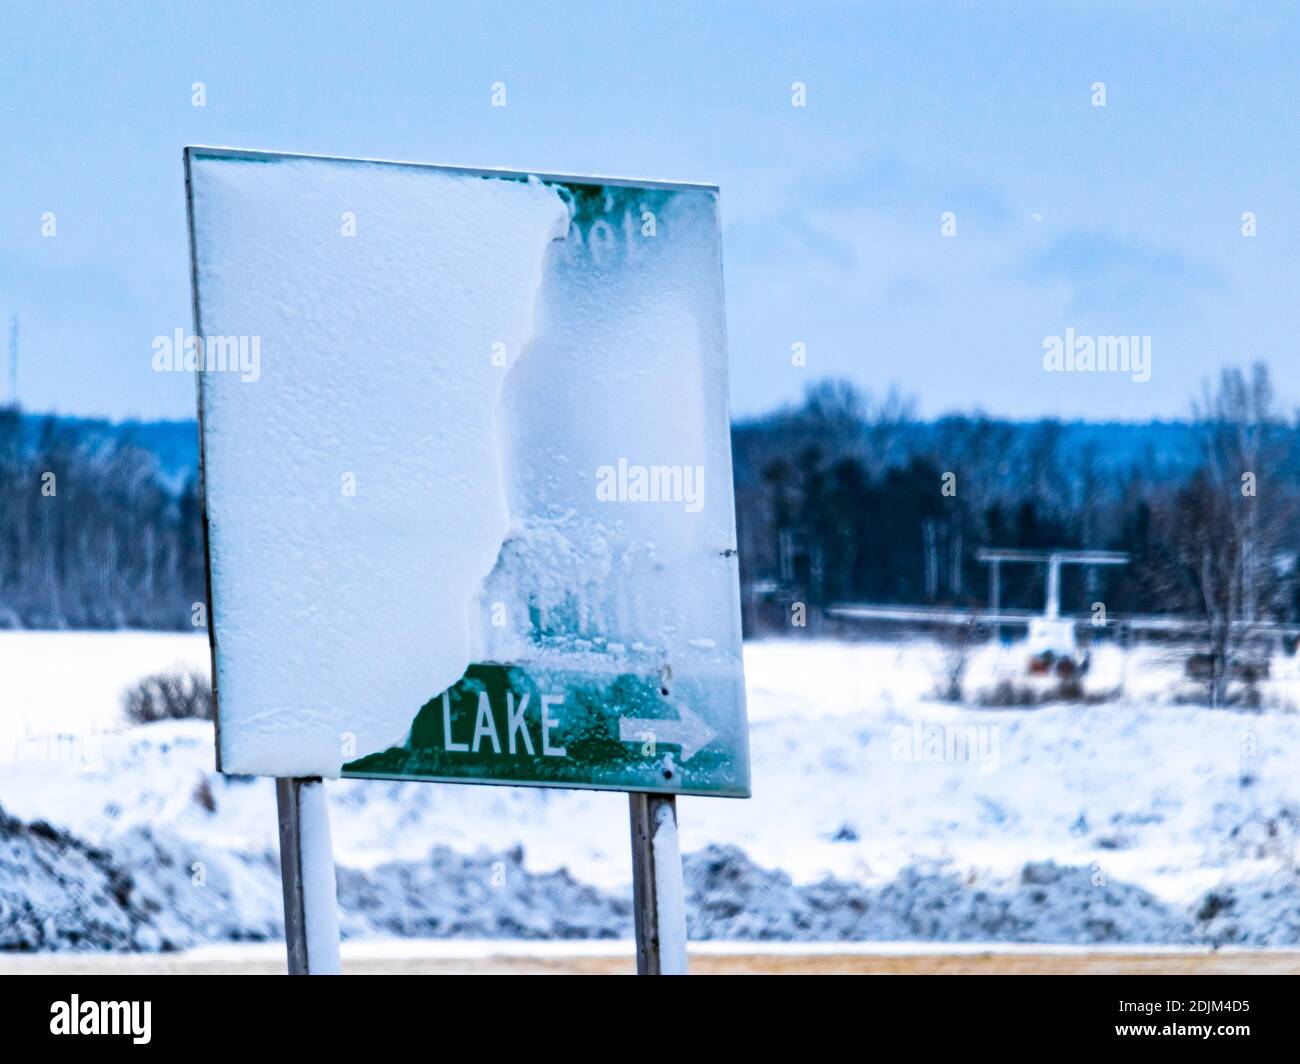 Le panneau indiquant la sortie de l'autoroute pointe vers UN lac, mais son nom est masqué par la neige Banque D'Images